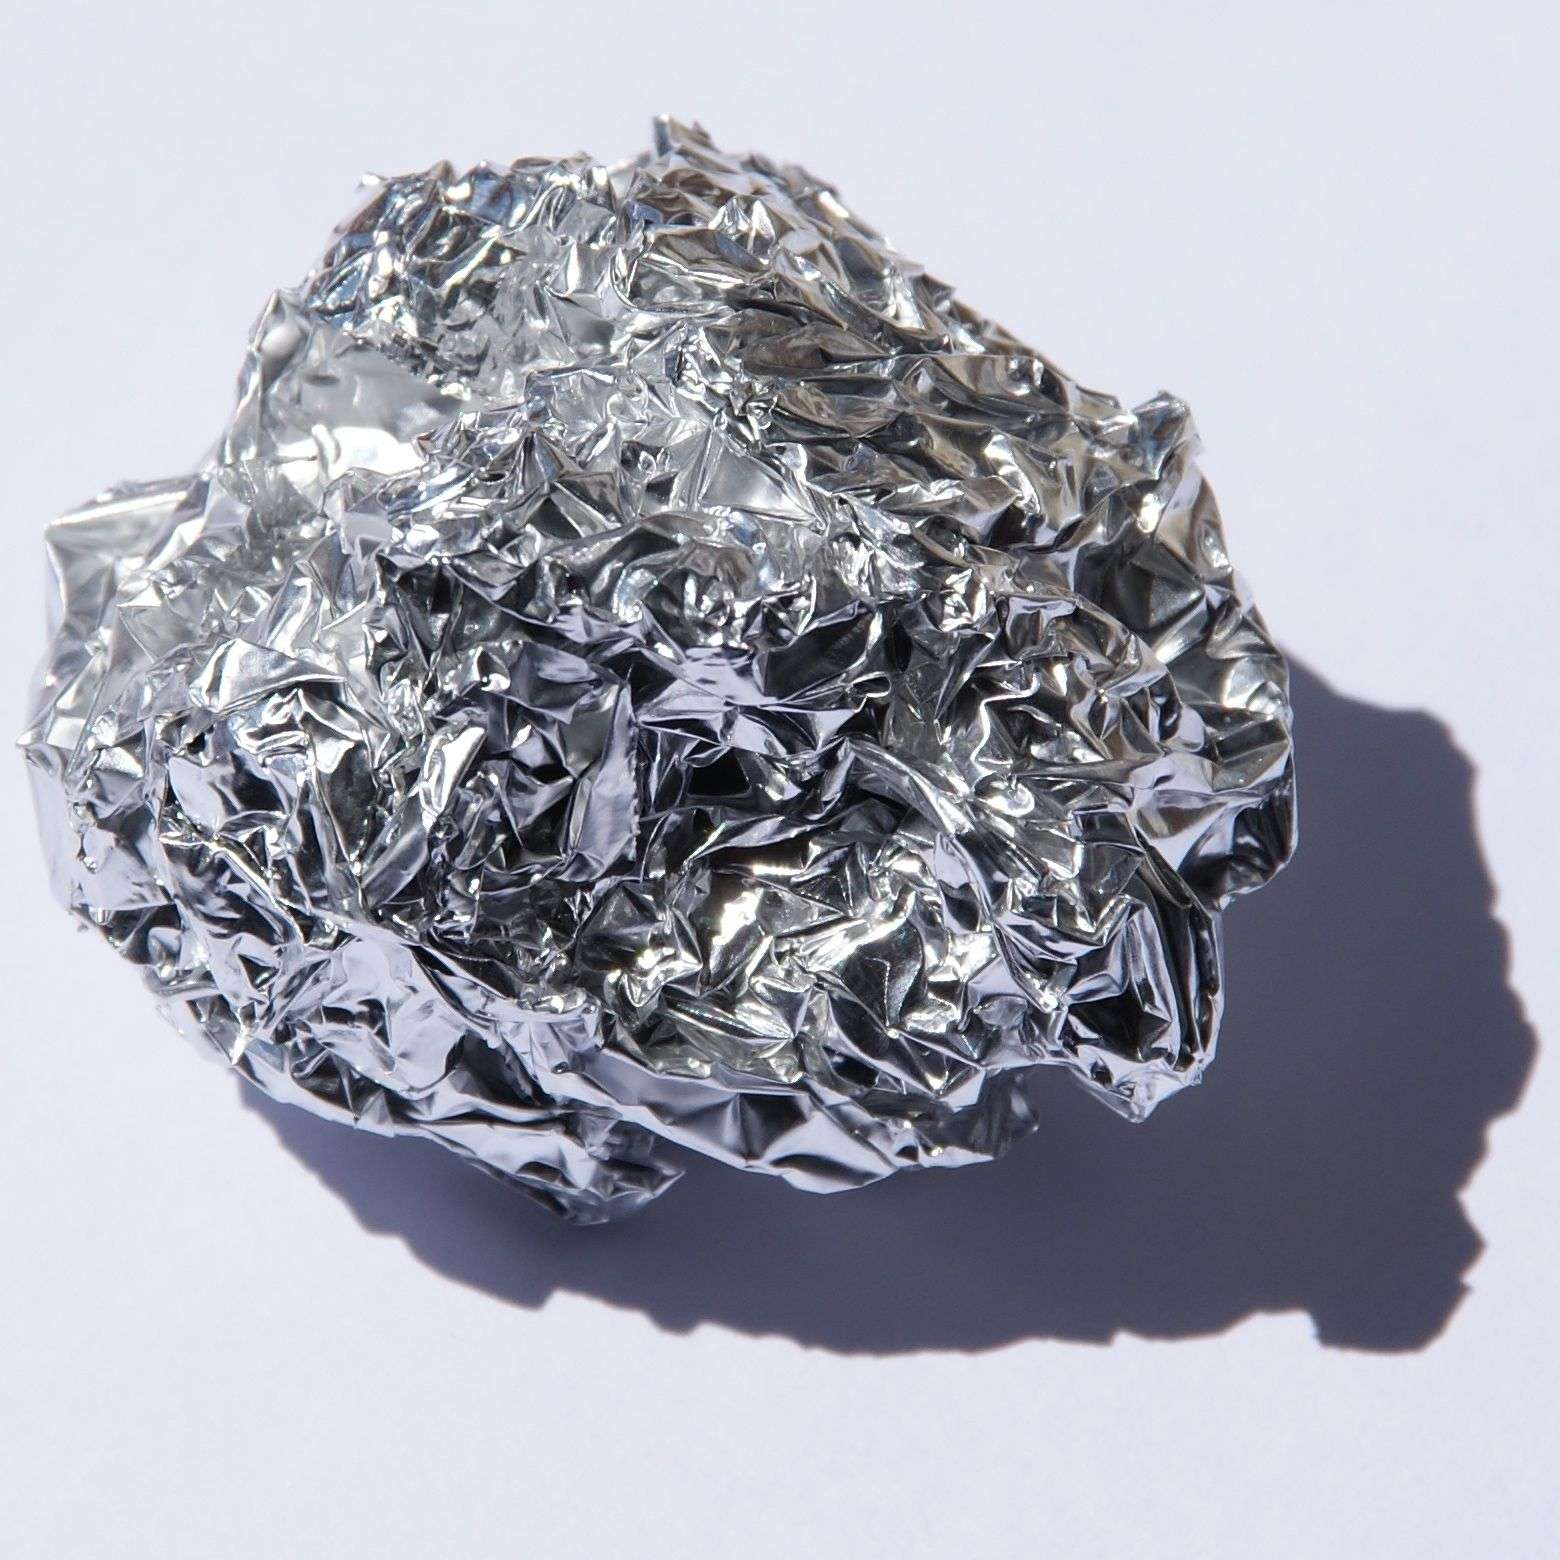 L'aluminium comme protection des aliments et médicaments - Association  Suisse de l'Aluminium